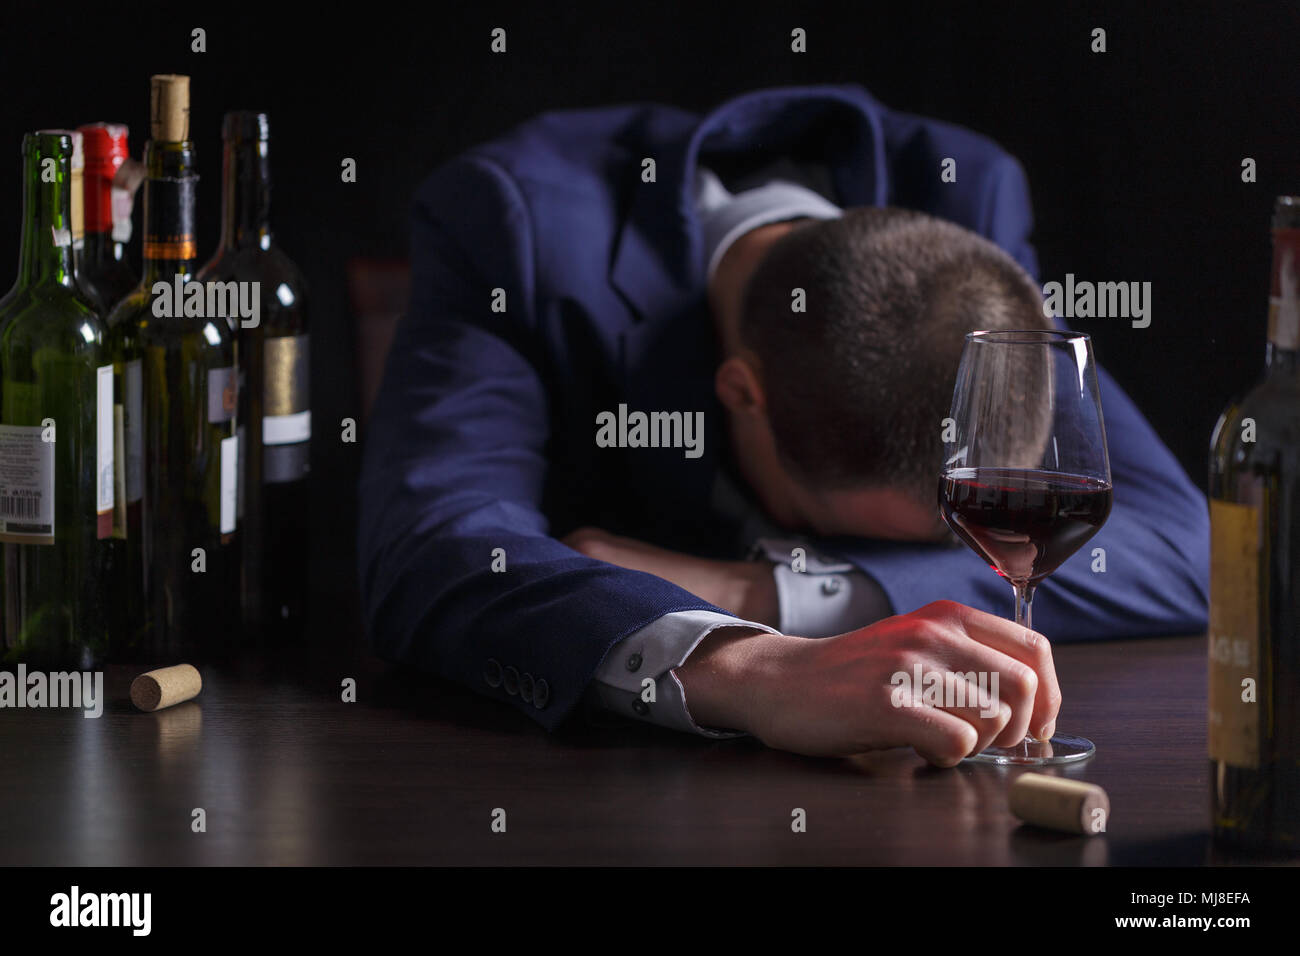 Kaufmann betrunken von Wein. Elegante alkoholische Stockfotografie - Alamy